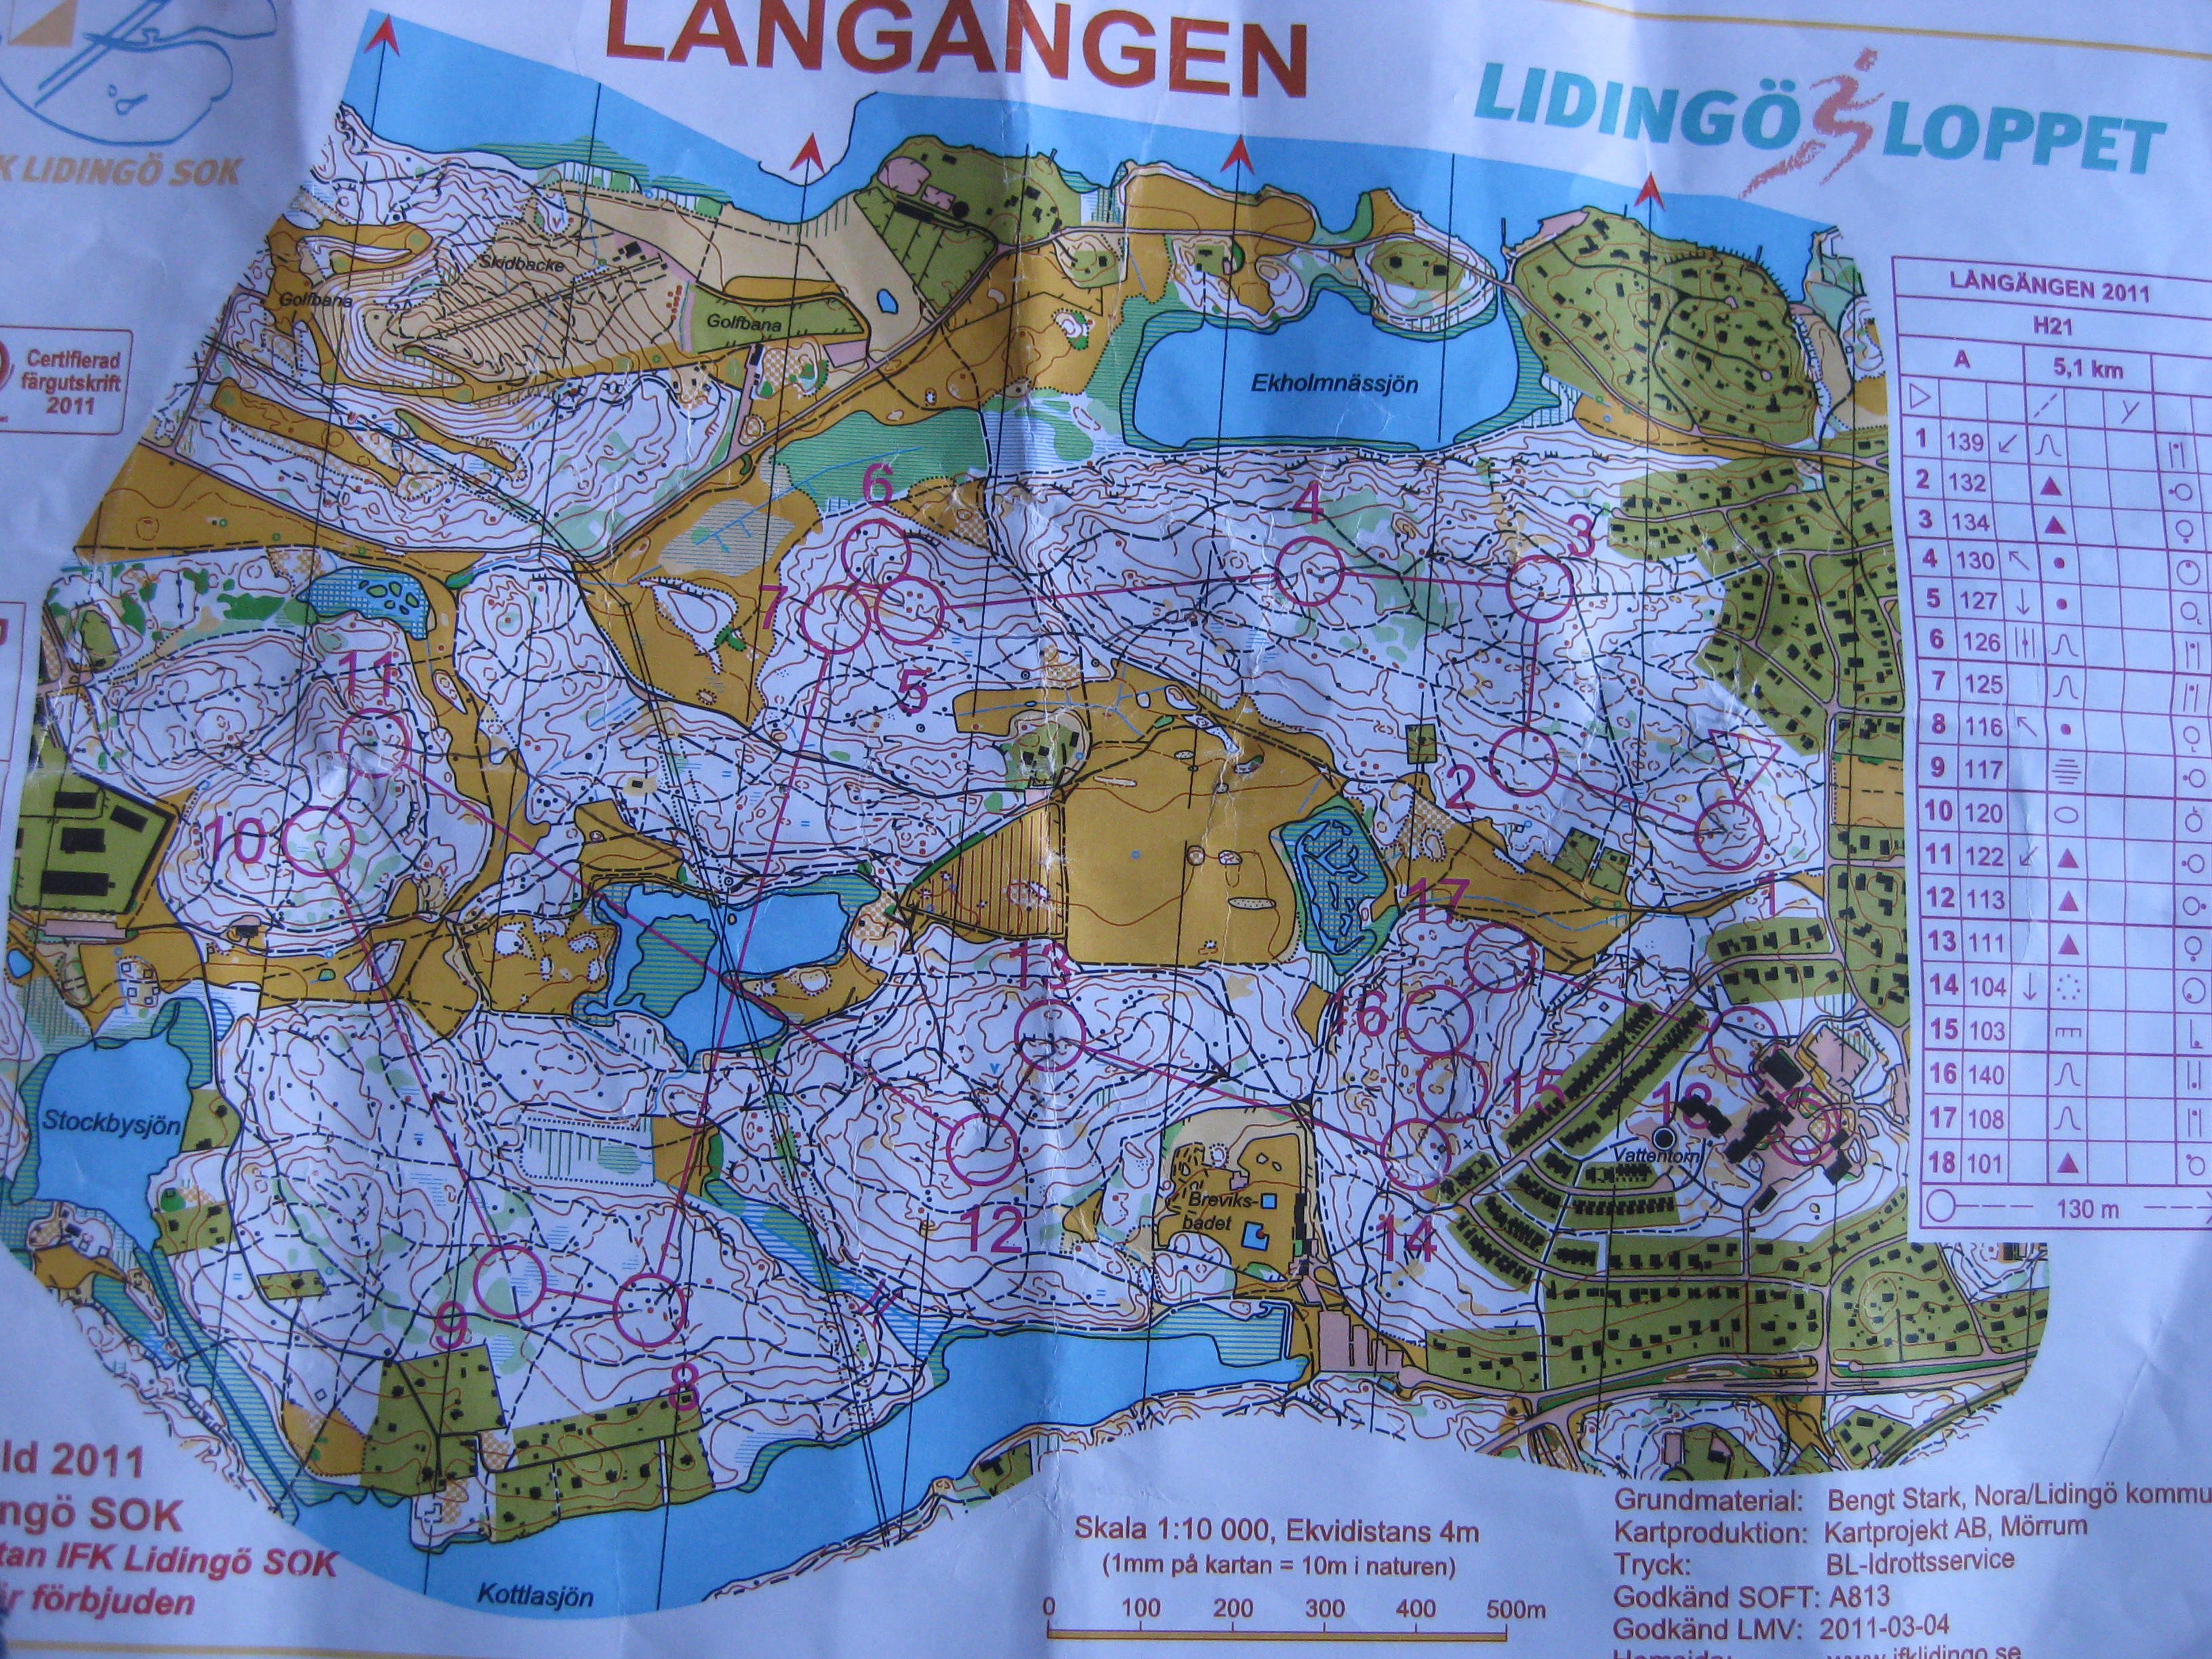 Lidingö (03.04.2011)